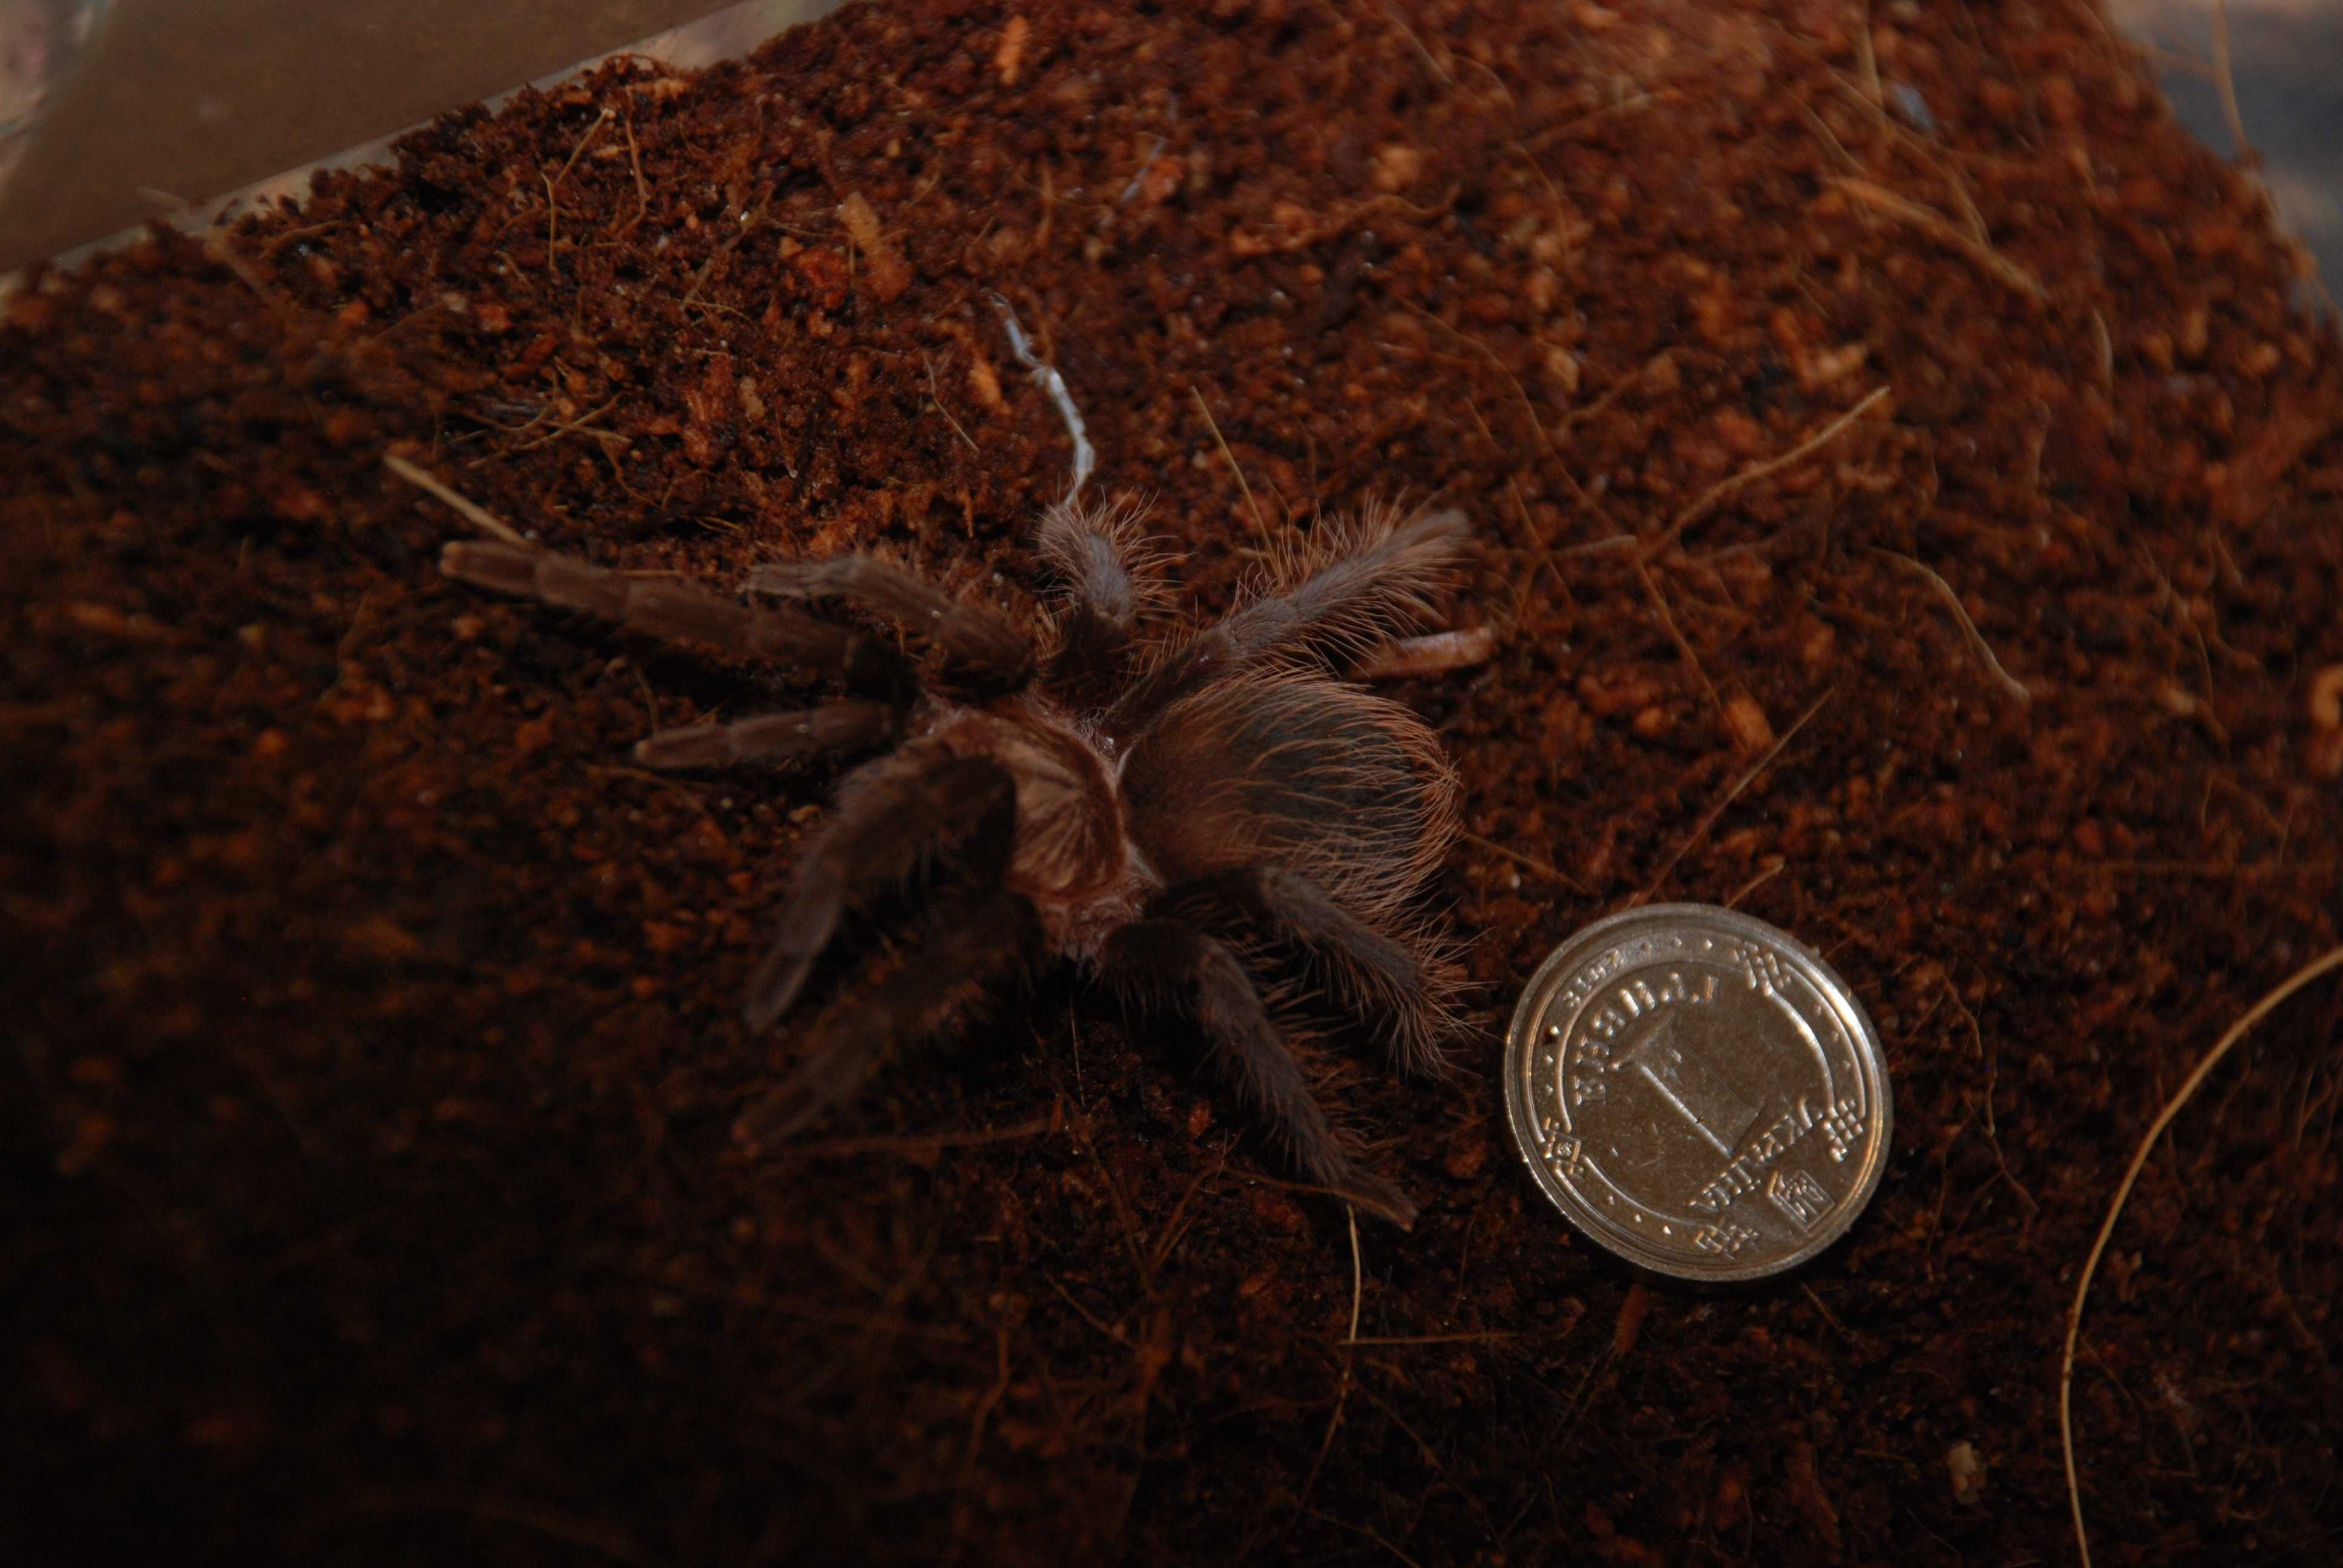 Красивейший паук Брахипельма Альбопилосум